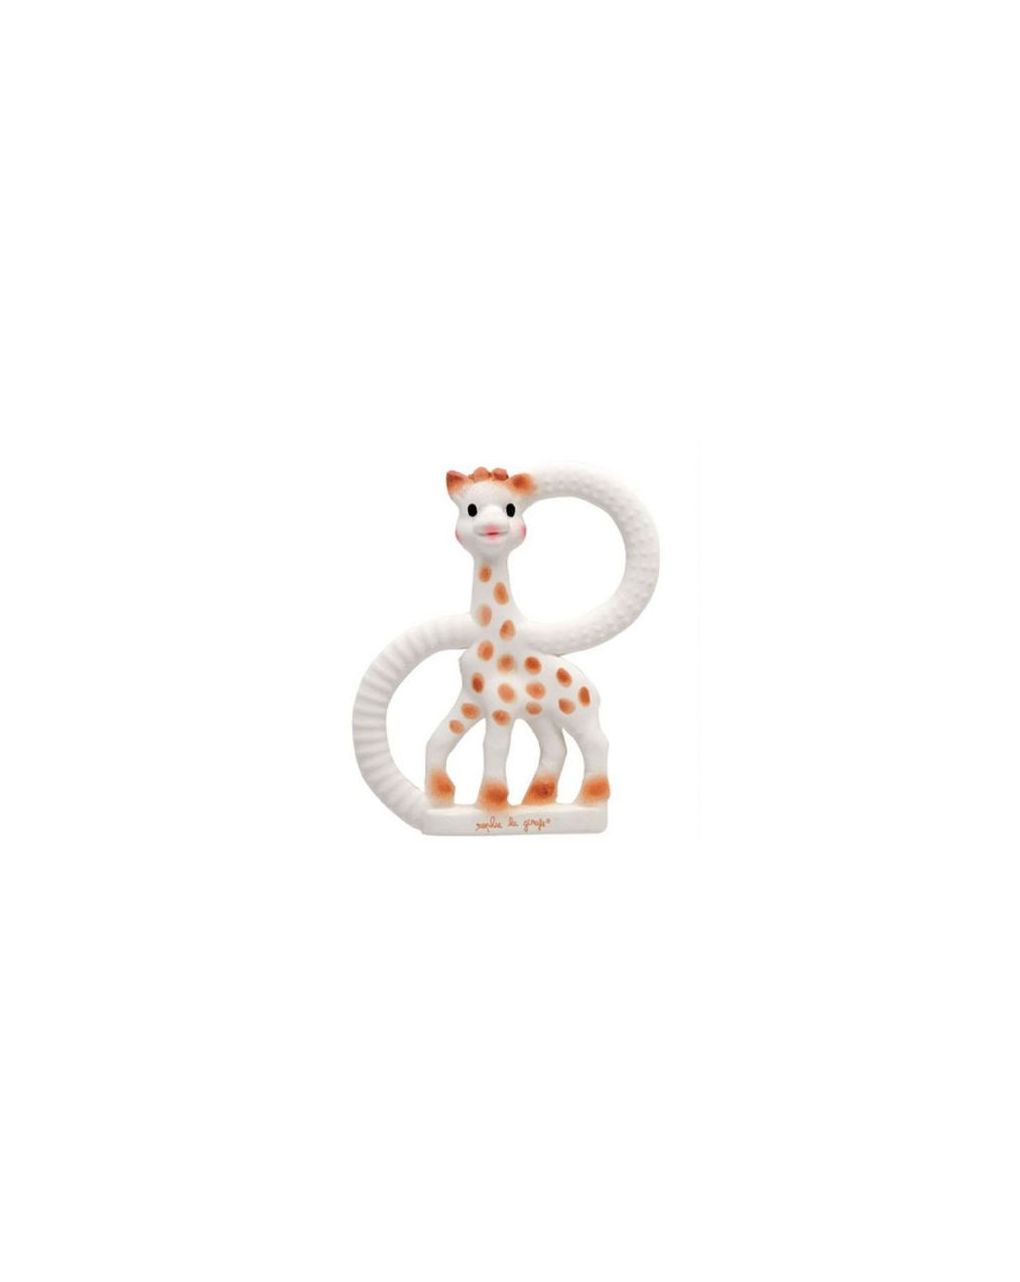 Vulli - sophie, a girafa, anel de dentição macio - SOPHIE LA GIRAFE